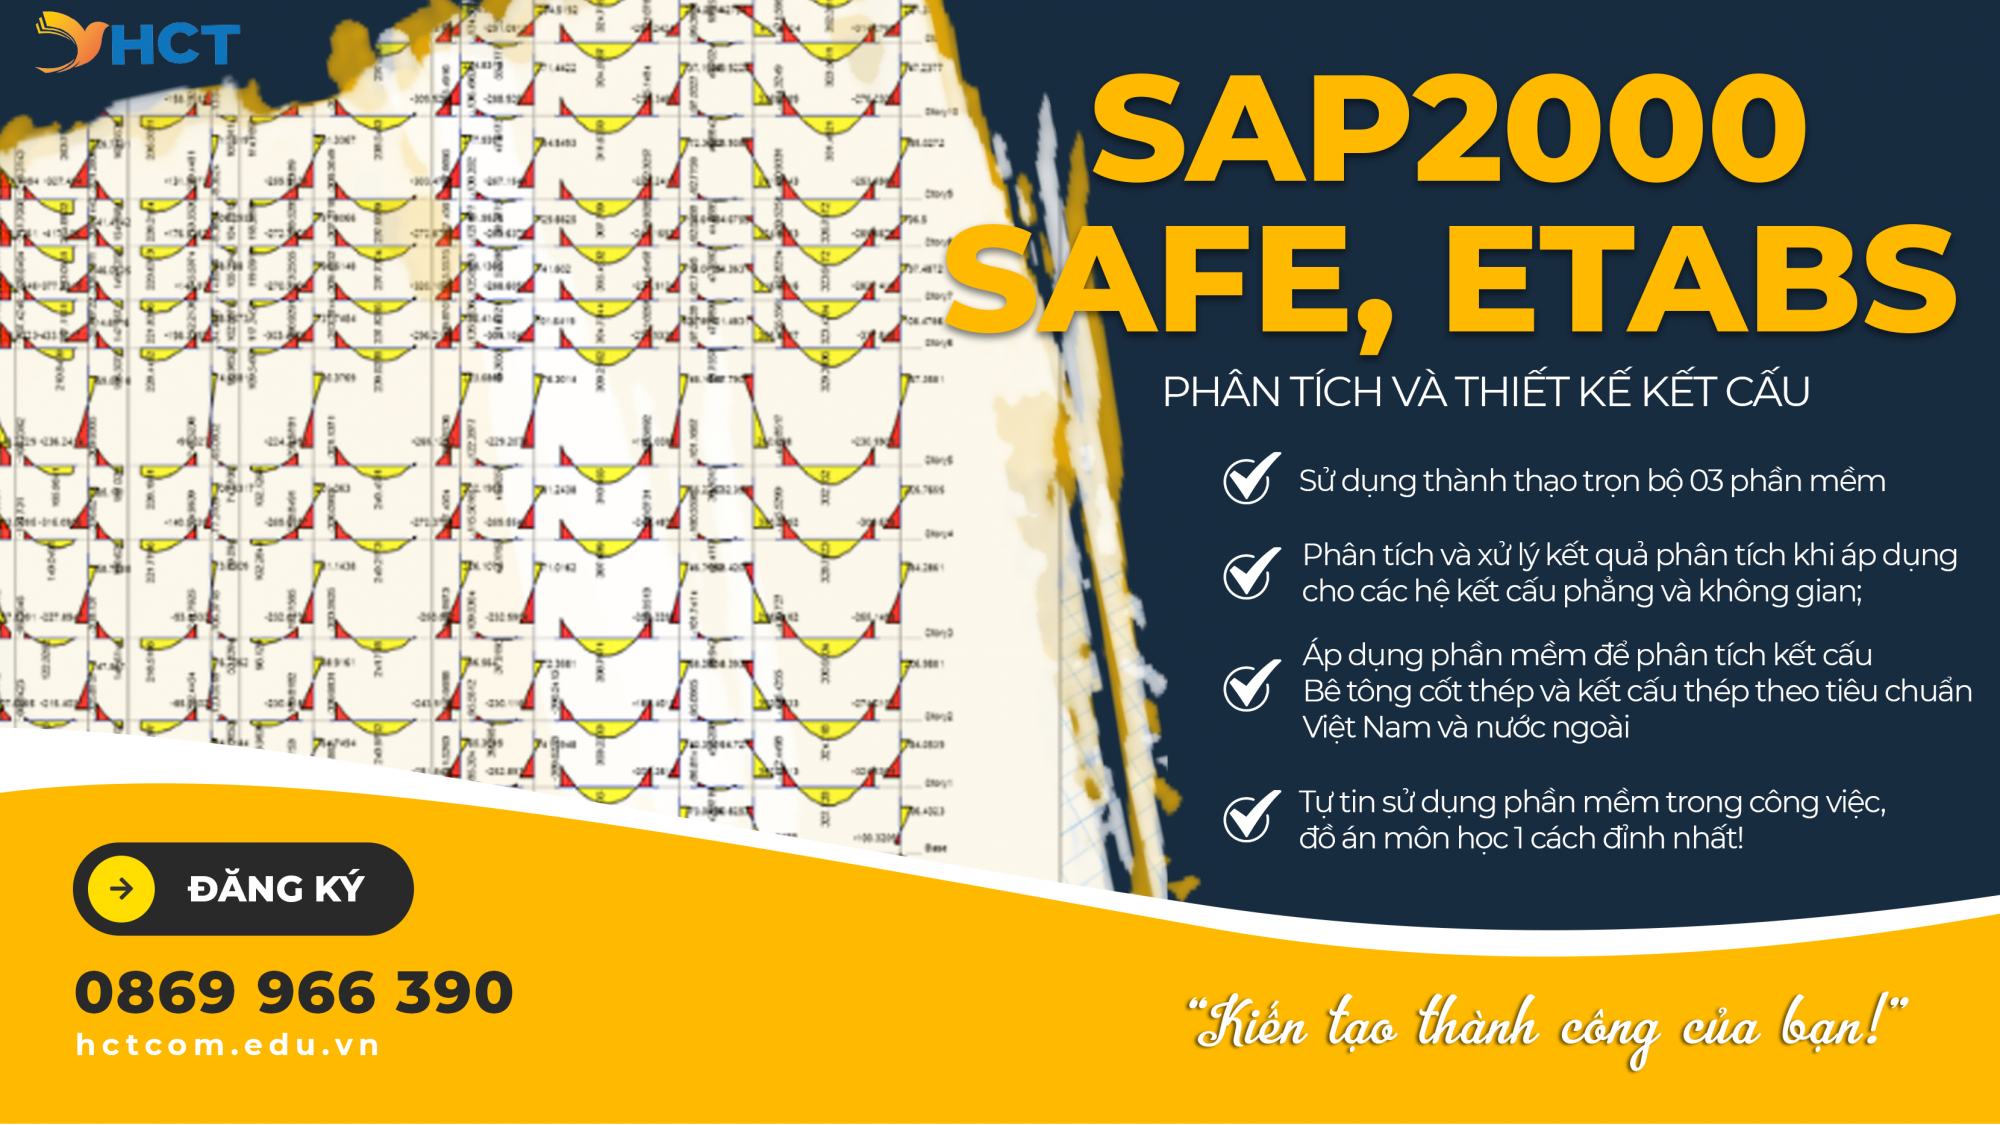 ESS - ETABS, SAFE và SAP2000 Phân tích kết cấu xây dựng